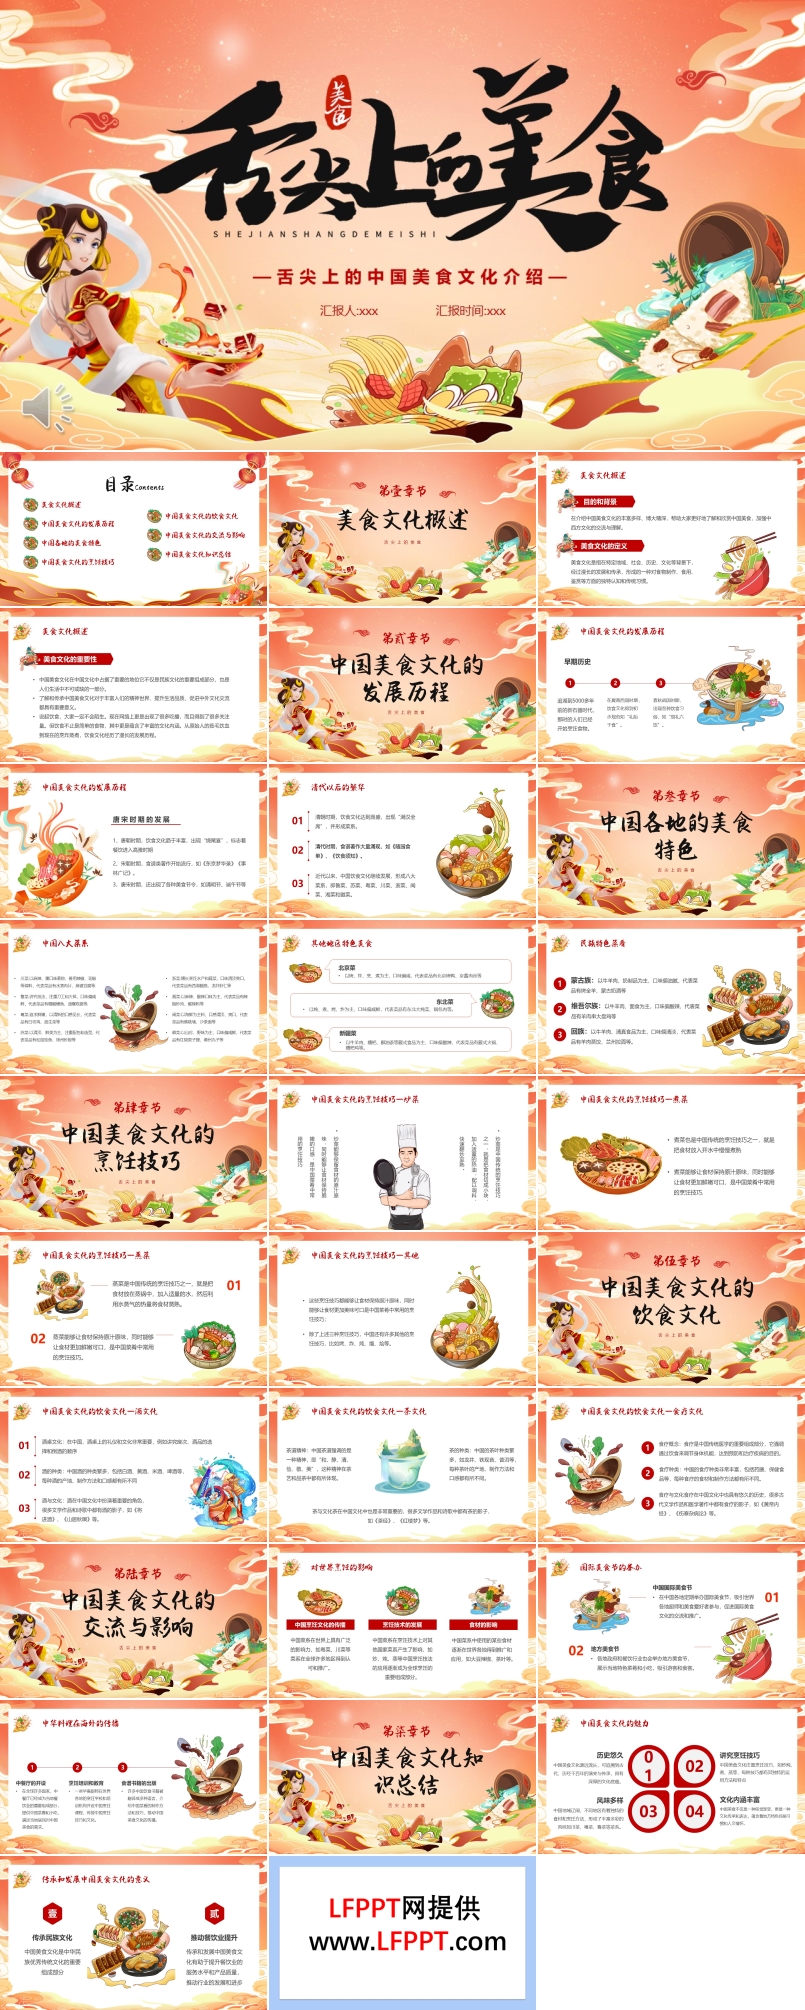 中国美食传统文化美食主题PPT动态模板